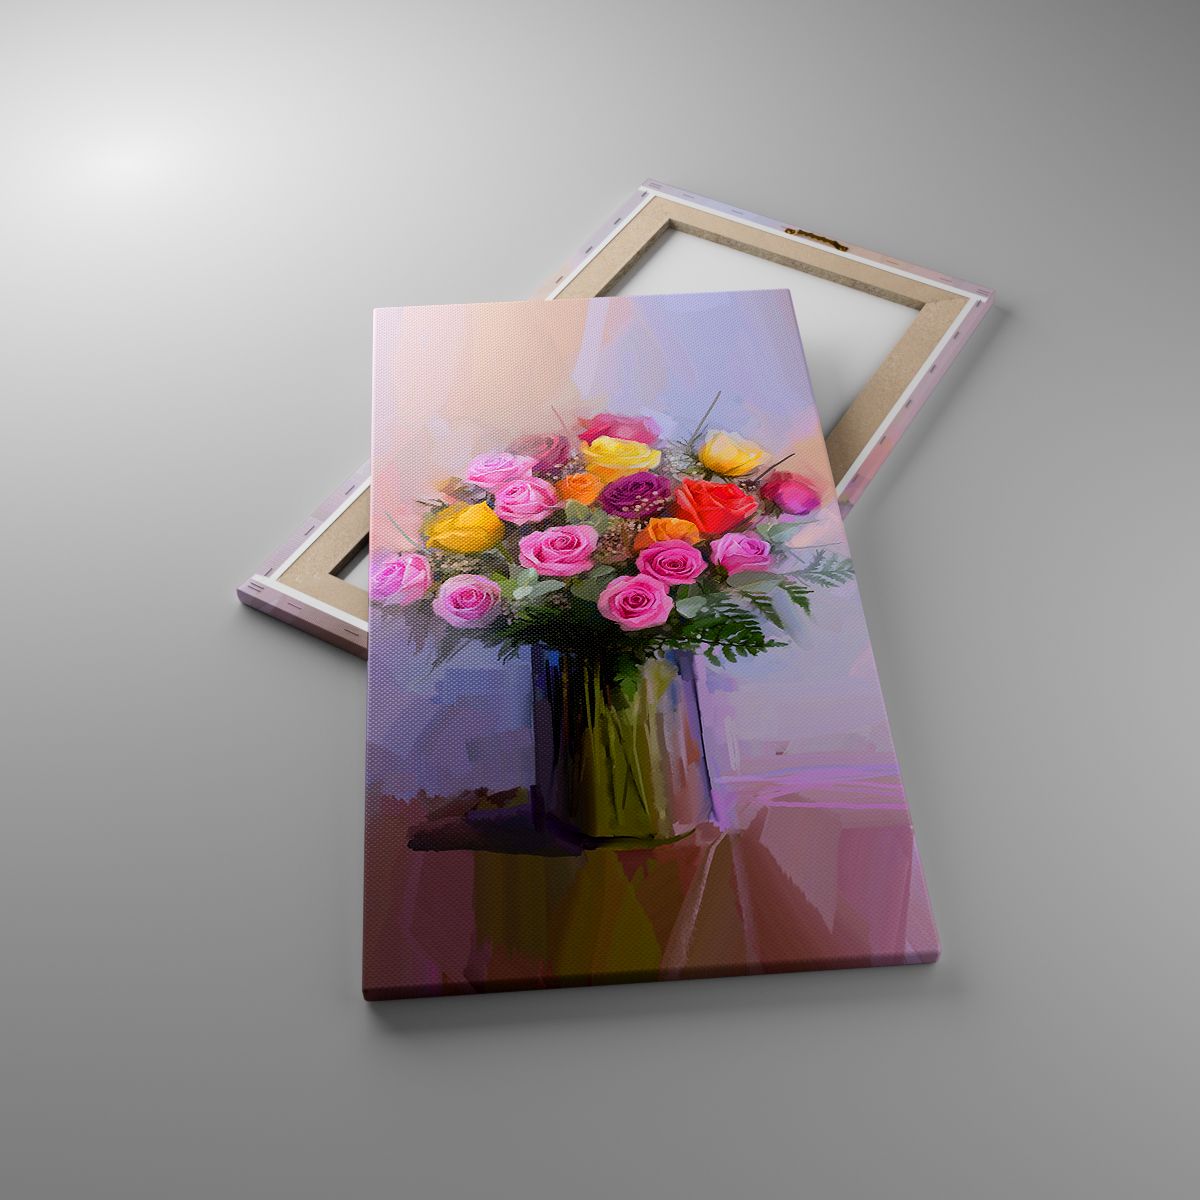 Obrazy Wazon Z Kwiatami, Obrazy Bukiet Kwiatów, Obrazy Sztuka, Obrazy Malarstwo, Obrazy Kwiaciarnia